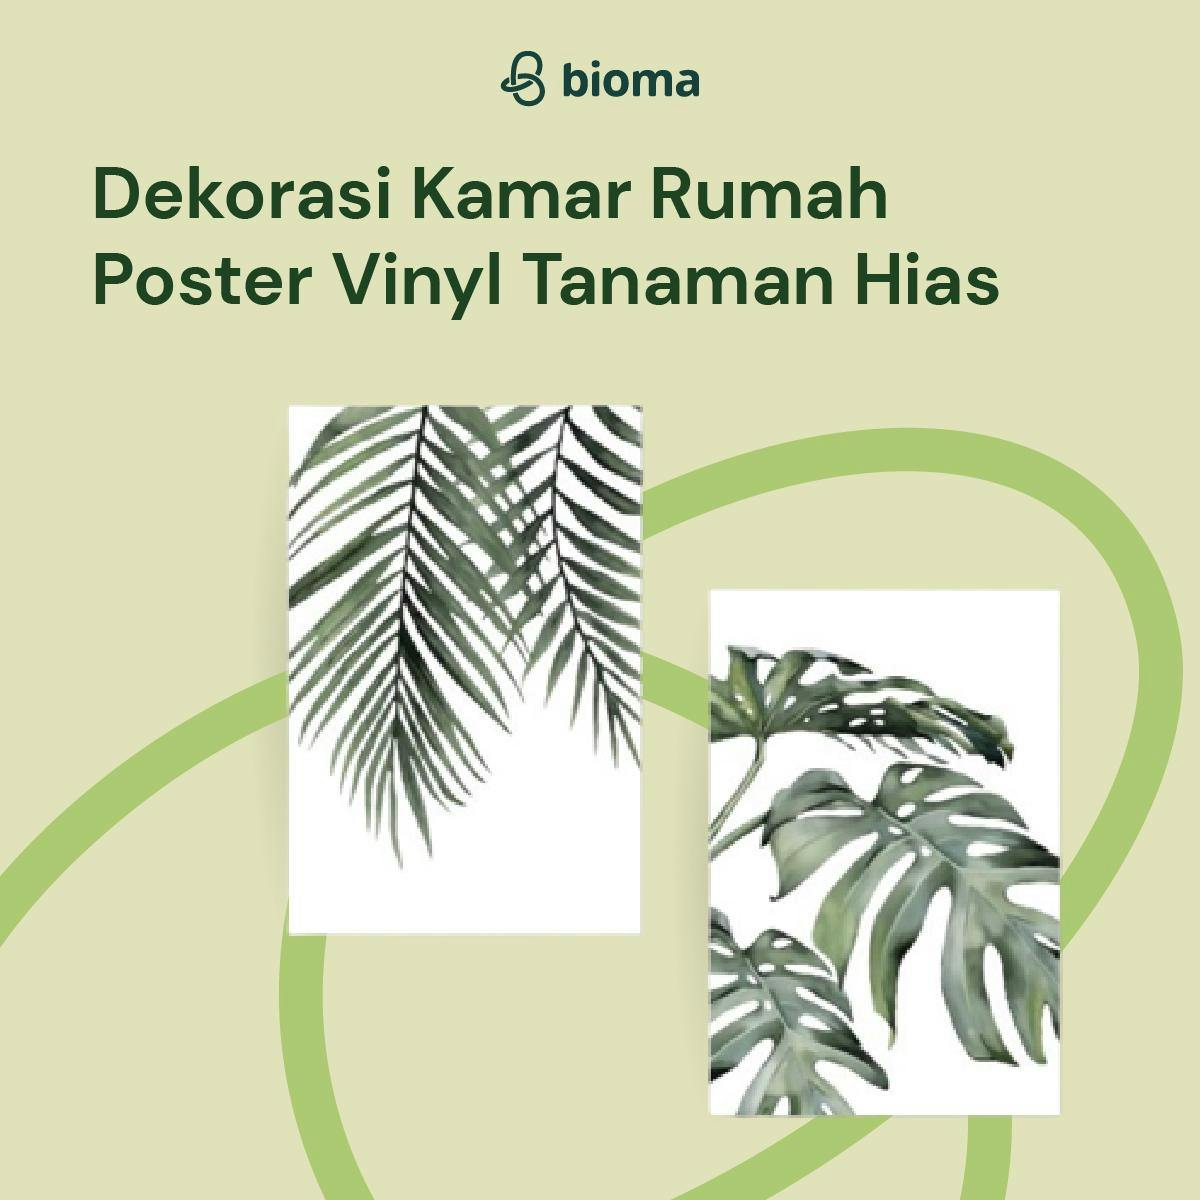 Image 503 Dekorasi Kamar Rumah Poster Vinyl Tanaman Hias